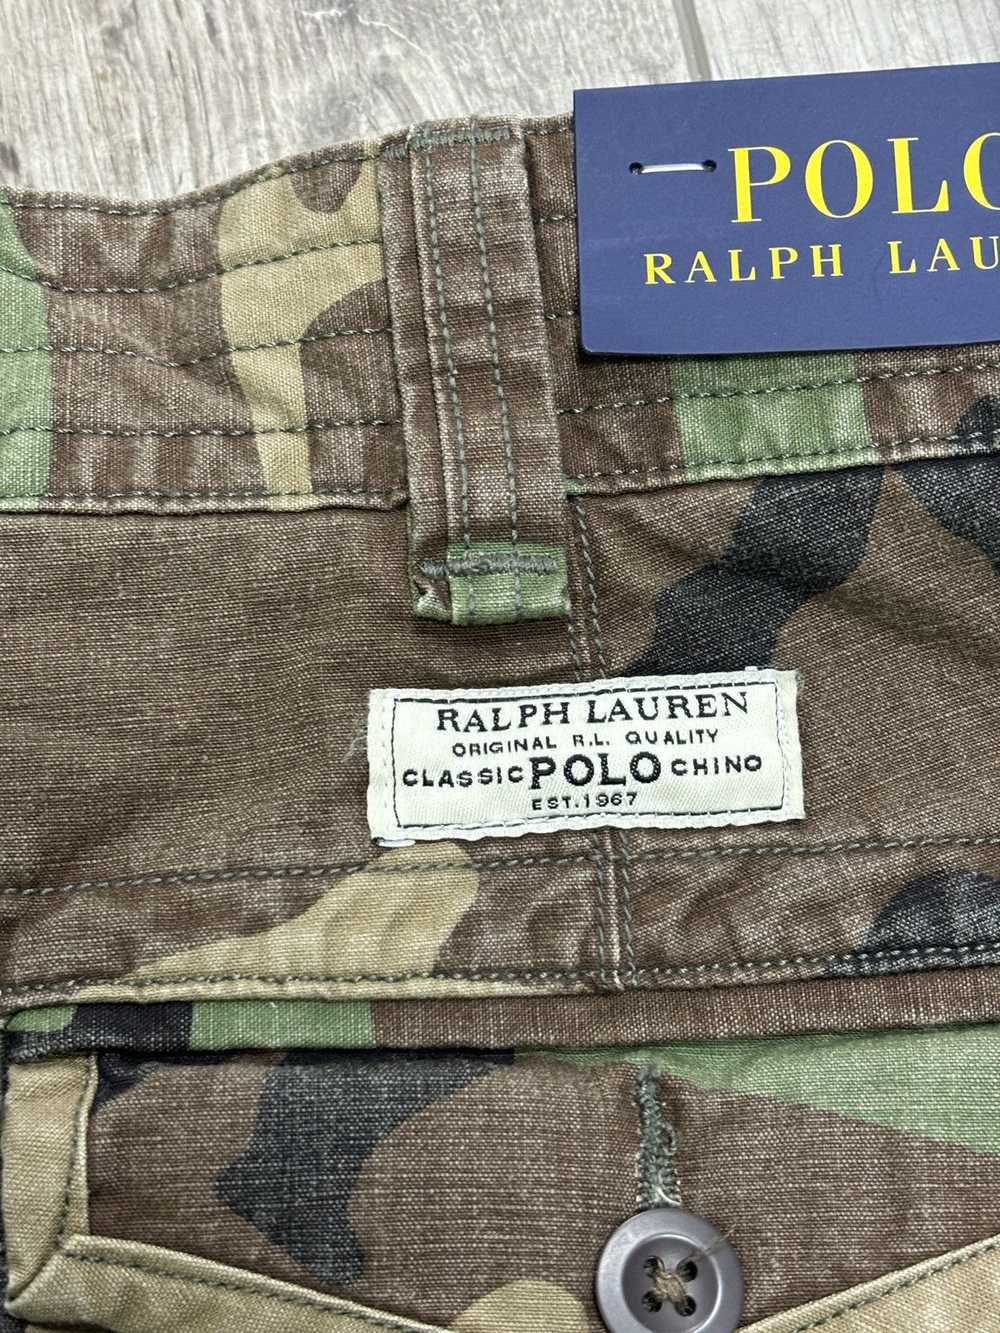 Polo Ralph Lauren Polo Ralph camo cargo shorts 34 - image 4